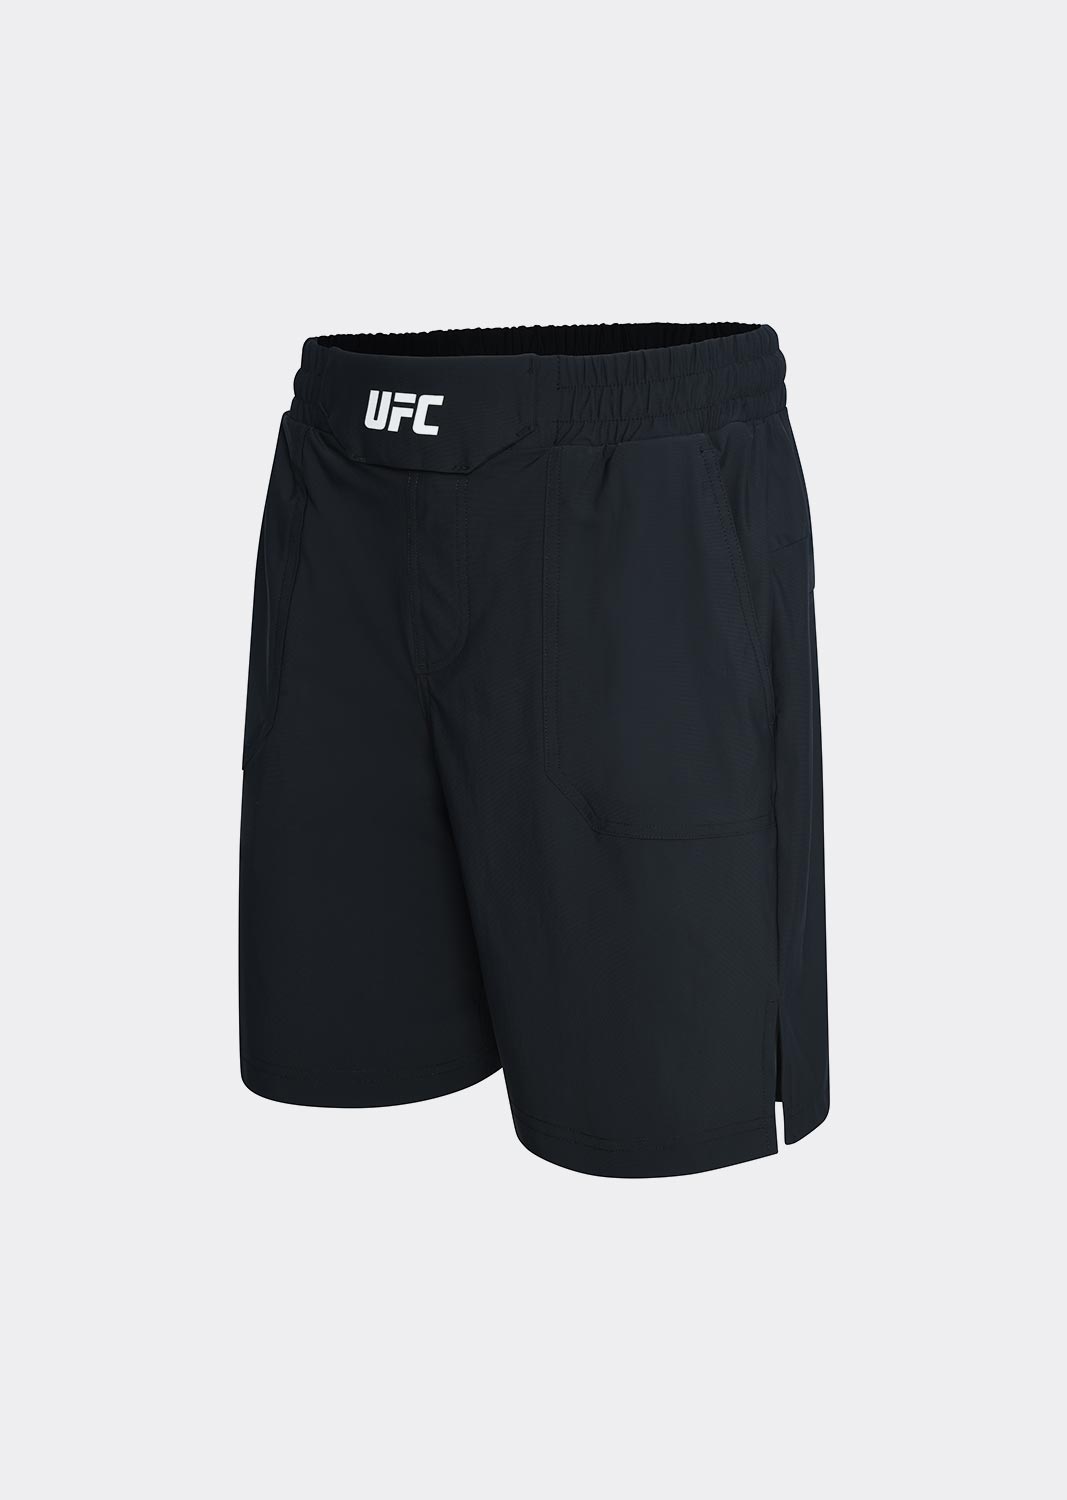 UFC 트리코트 레귤러핏 쇼츠 7인치 블랙 U4SPV2110BK